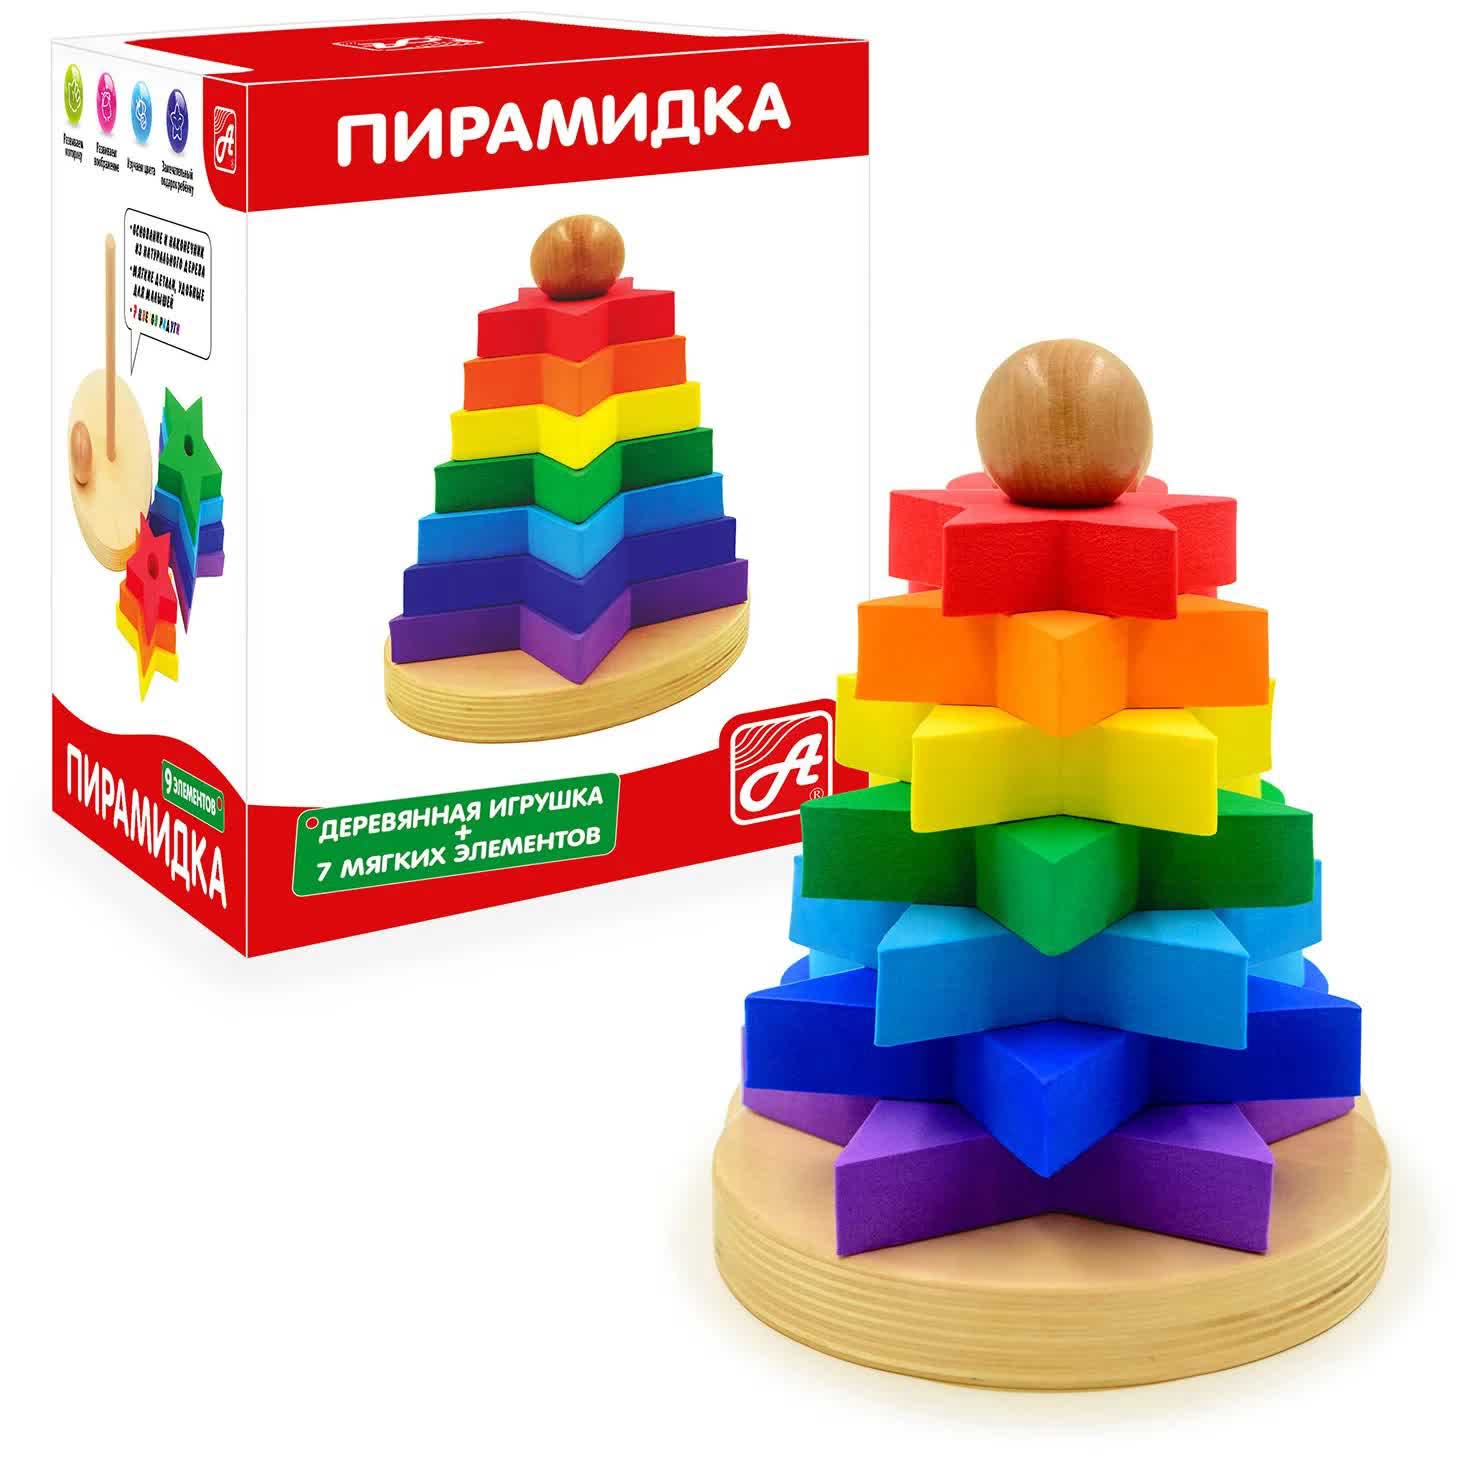 Пирамидка Радуга Звездочки развивающая игрушка деревянная пирамидка монохром от белого к черному радуга грез rg04018